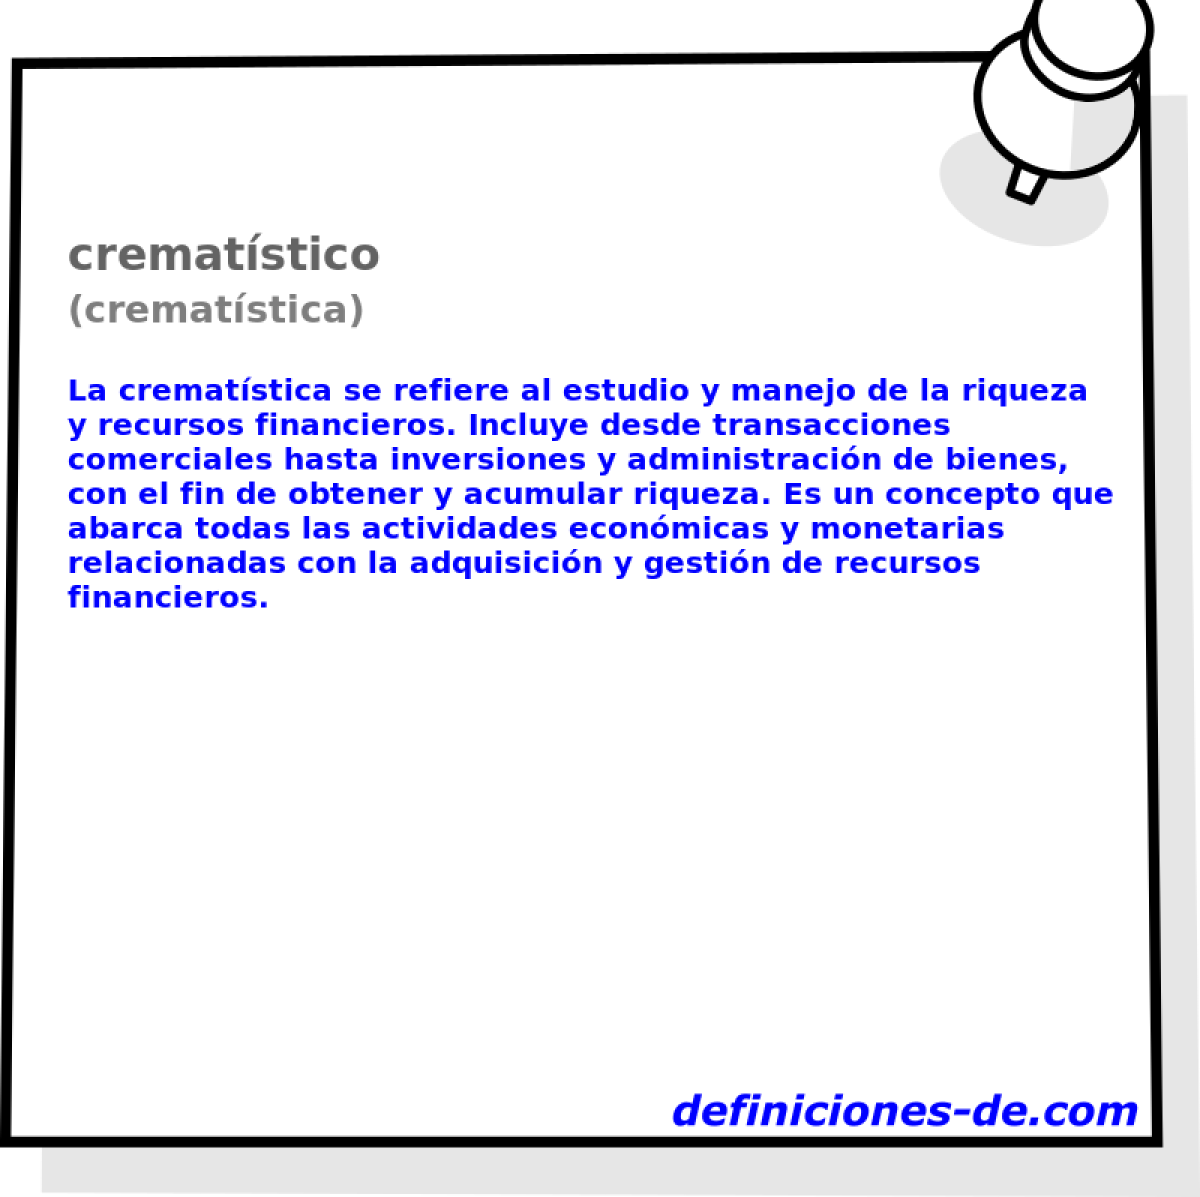 crematstico (crematstica)